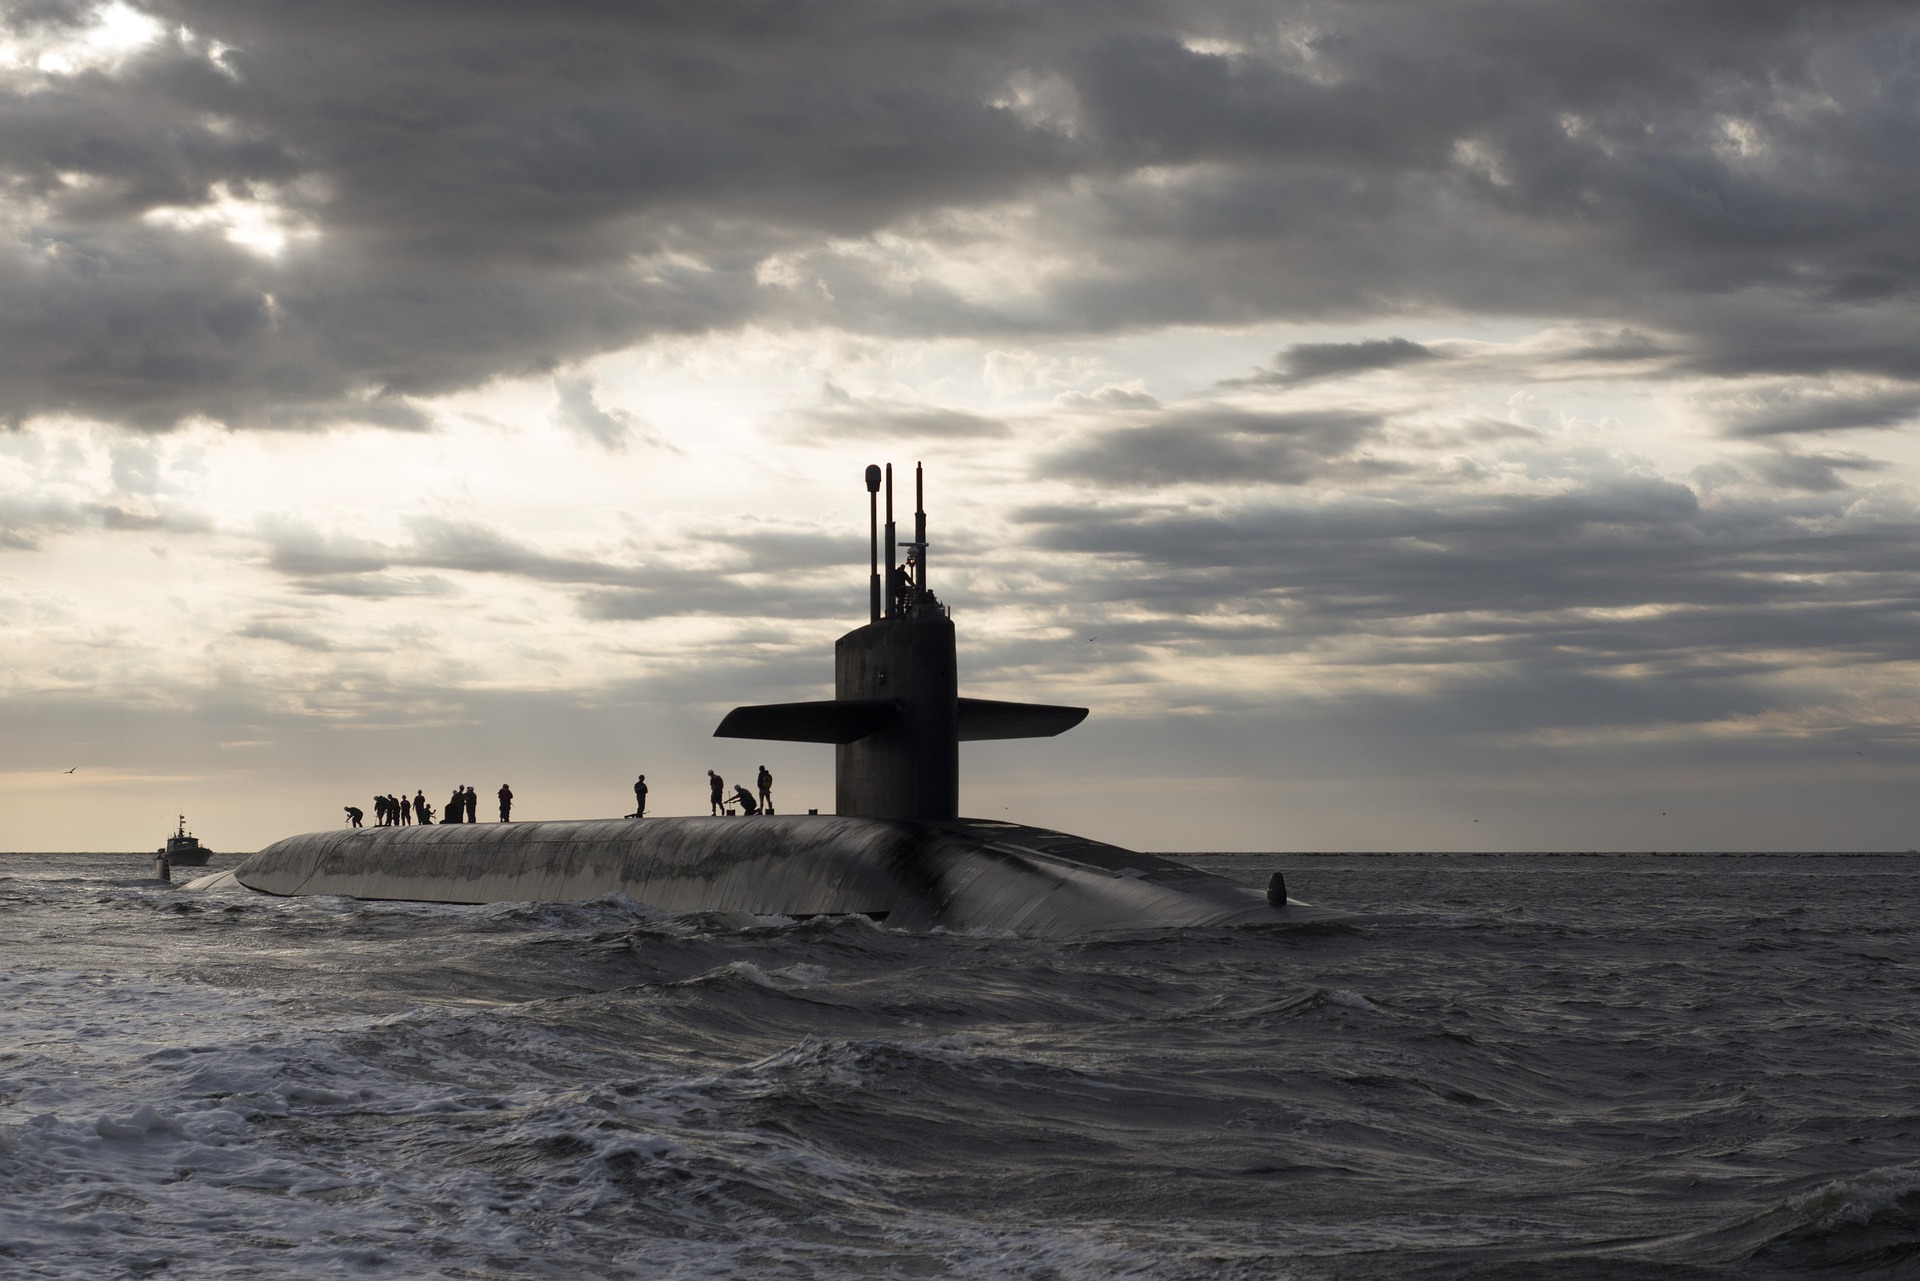 Concurso público: Marinha abre, no dia 25 de julho, 10 vagas para atuar com submarinos e instalações nucleares. Requisito é ter menos de 25 anos até 2023! - Canva